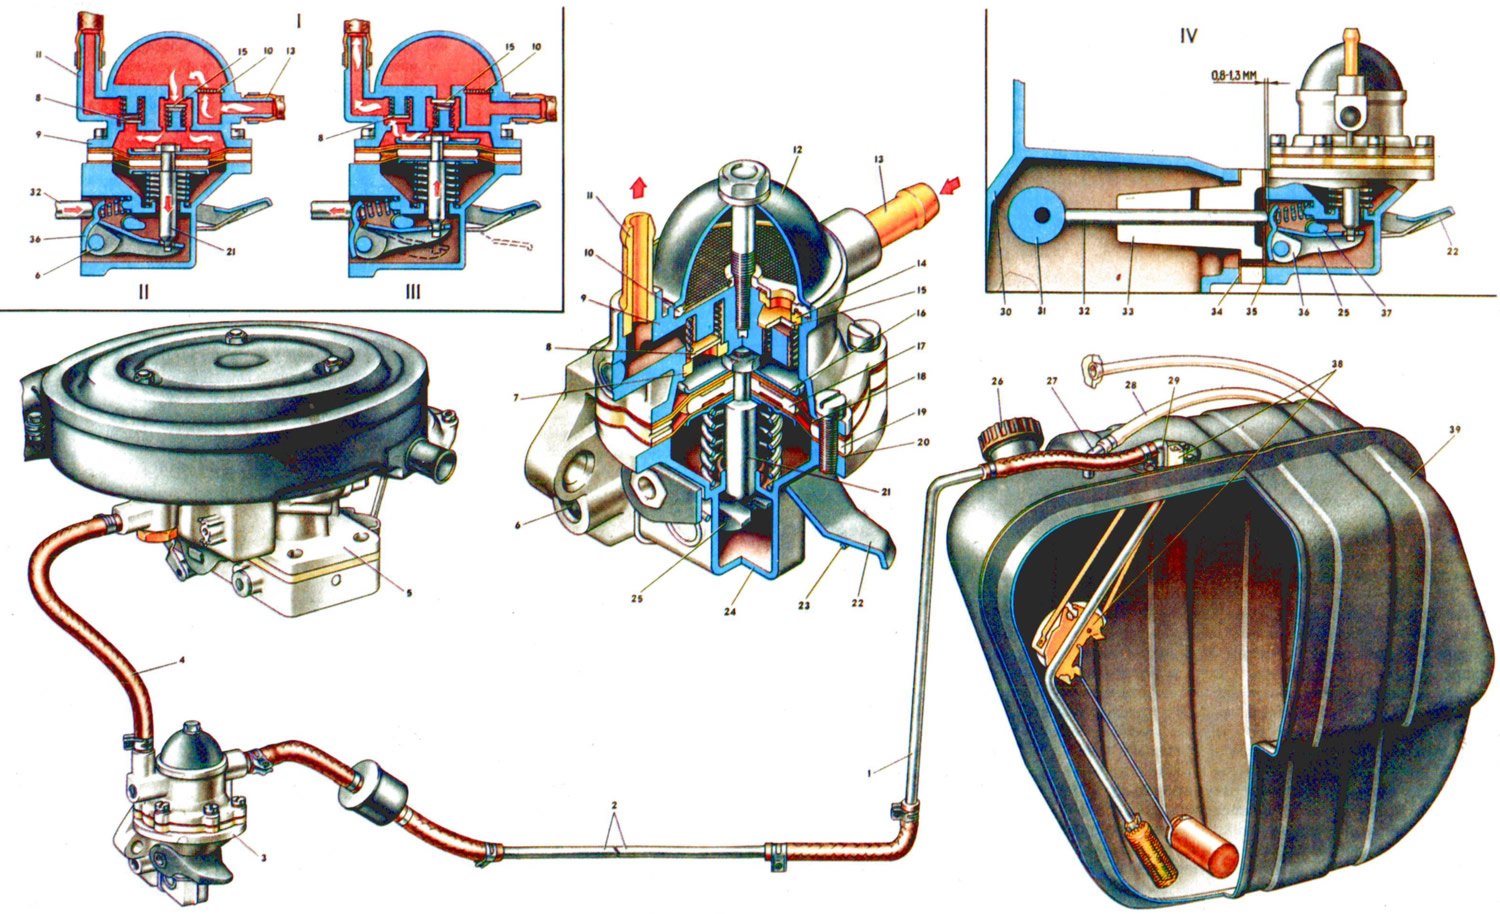 Ремонт двигатель карбюраторный. Система питания ВАЗ 2105 карбюратор. Топливная система ВАЗ 2105. Топливная система ВАЗ 2107 карб. Схема топливной системы ВАЗ 2104 карбюратор.